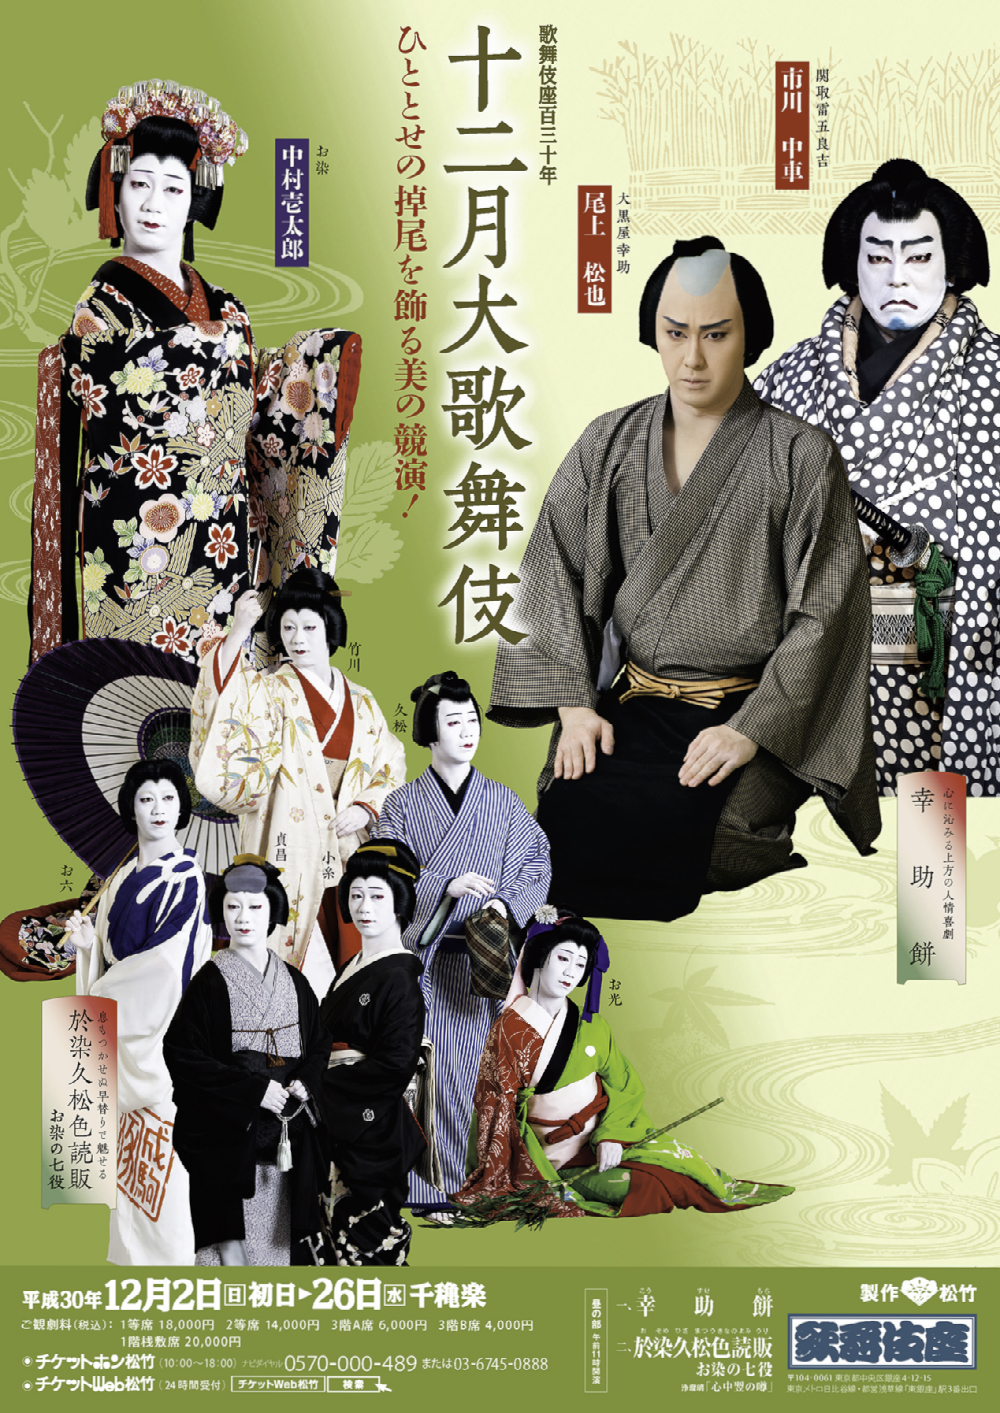 歌舞伎座「十二月大歌舞伎」特別チラシが完成